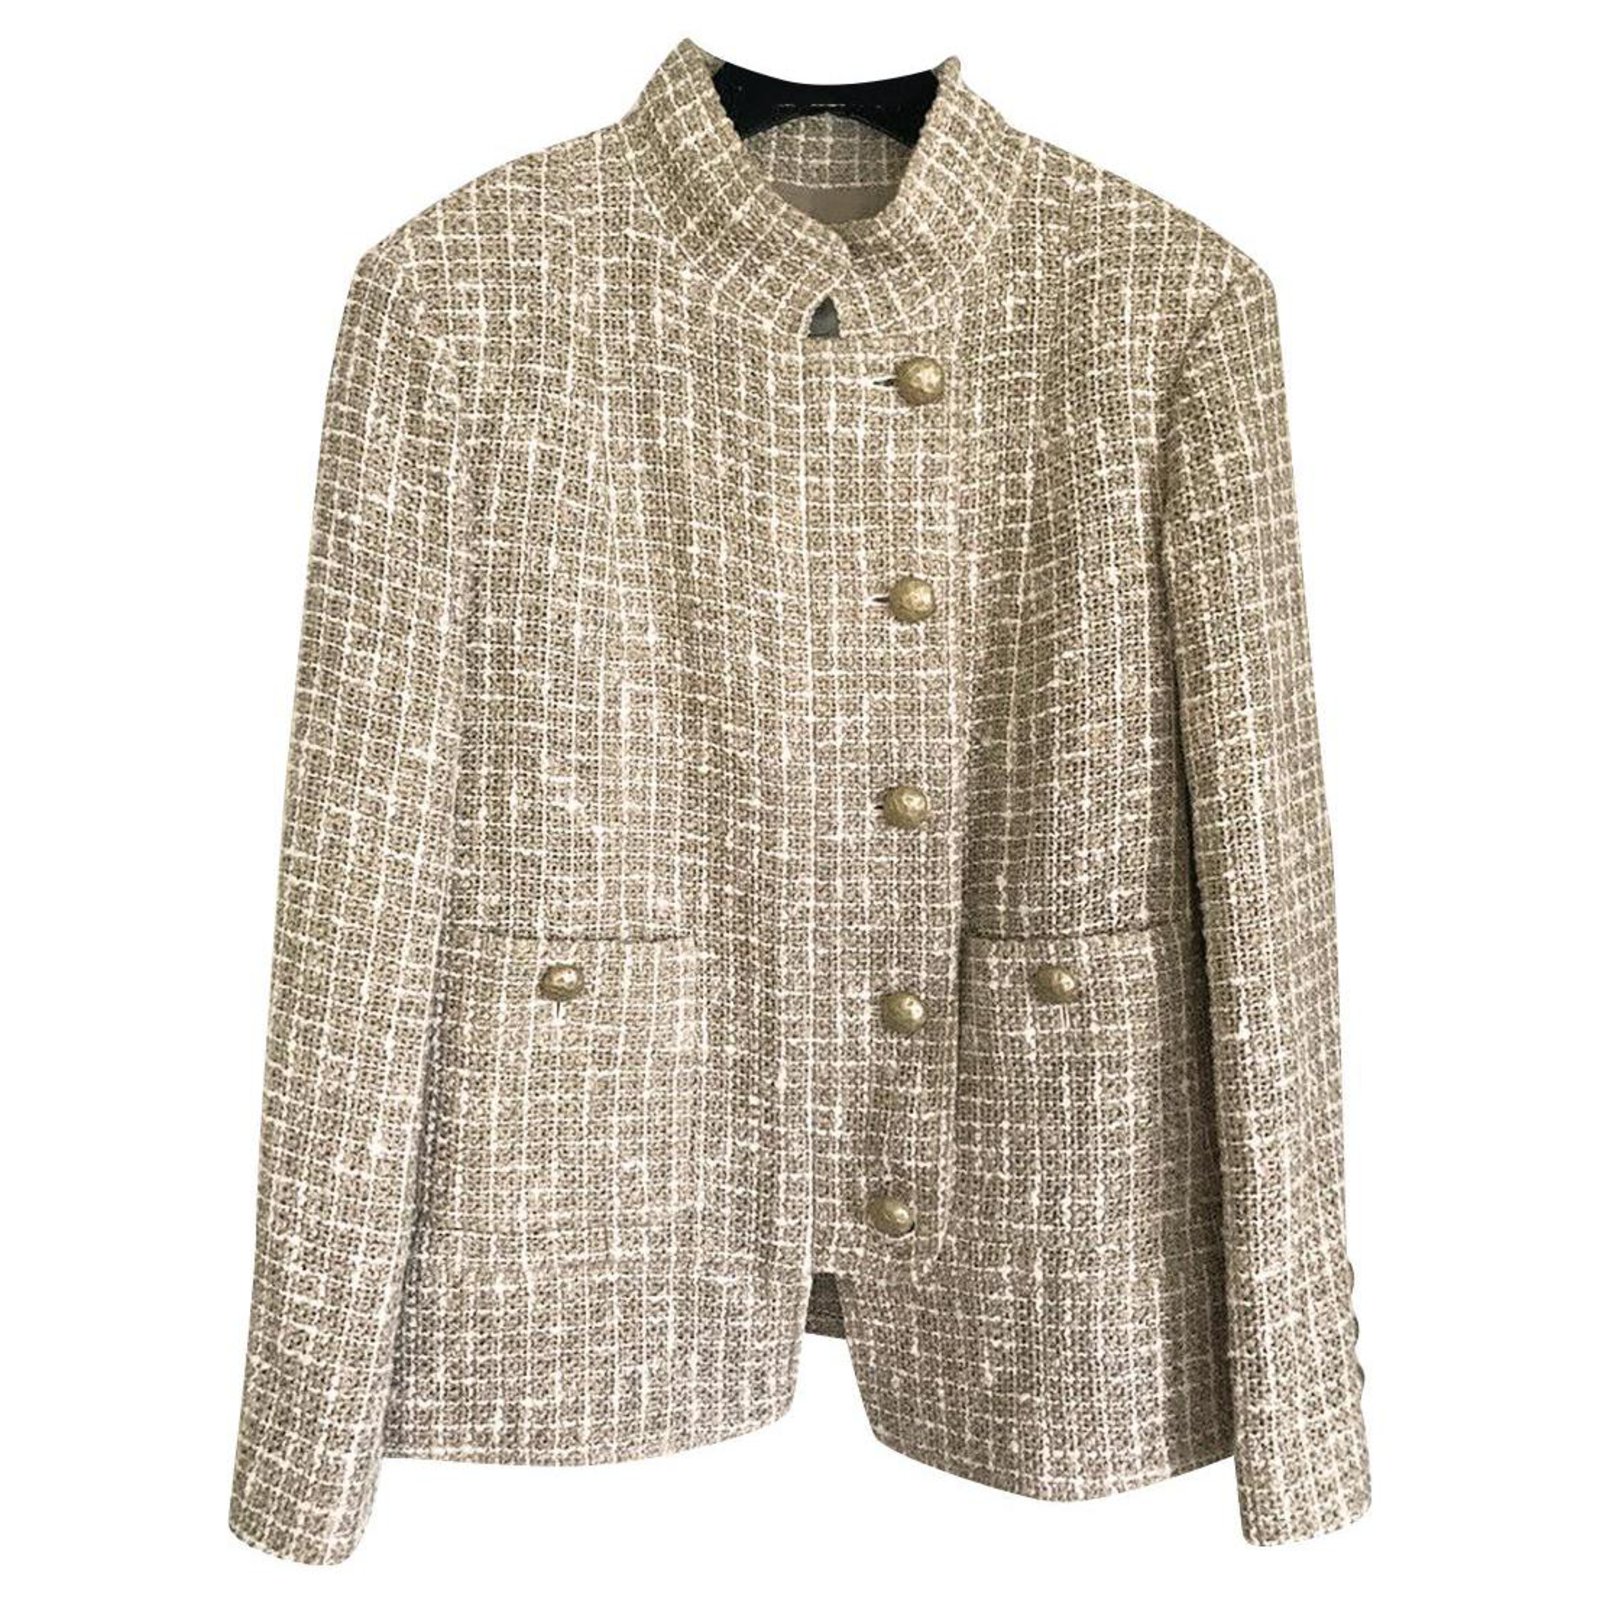 chanel tweed jacket price